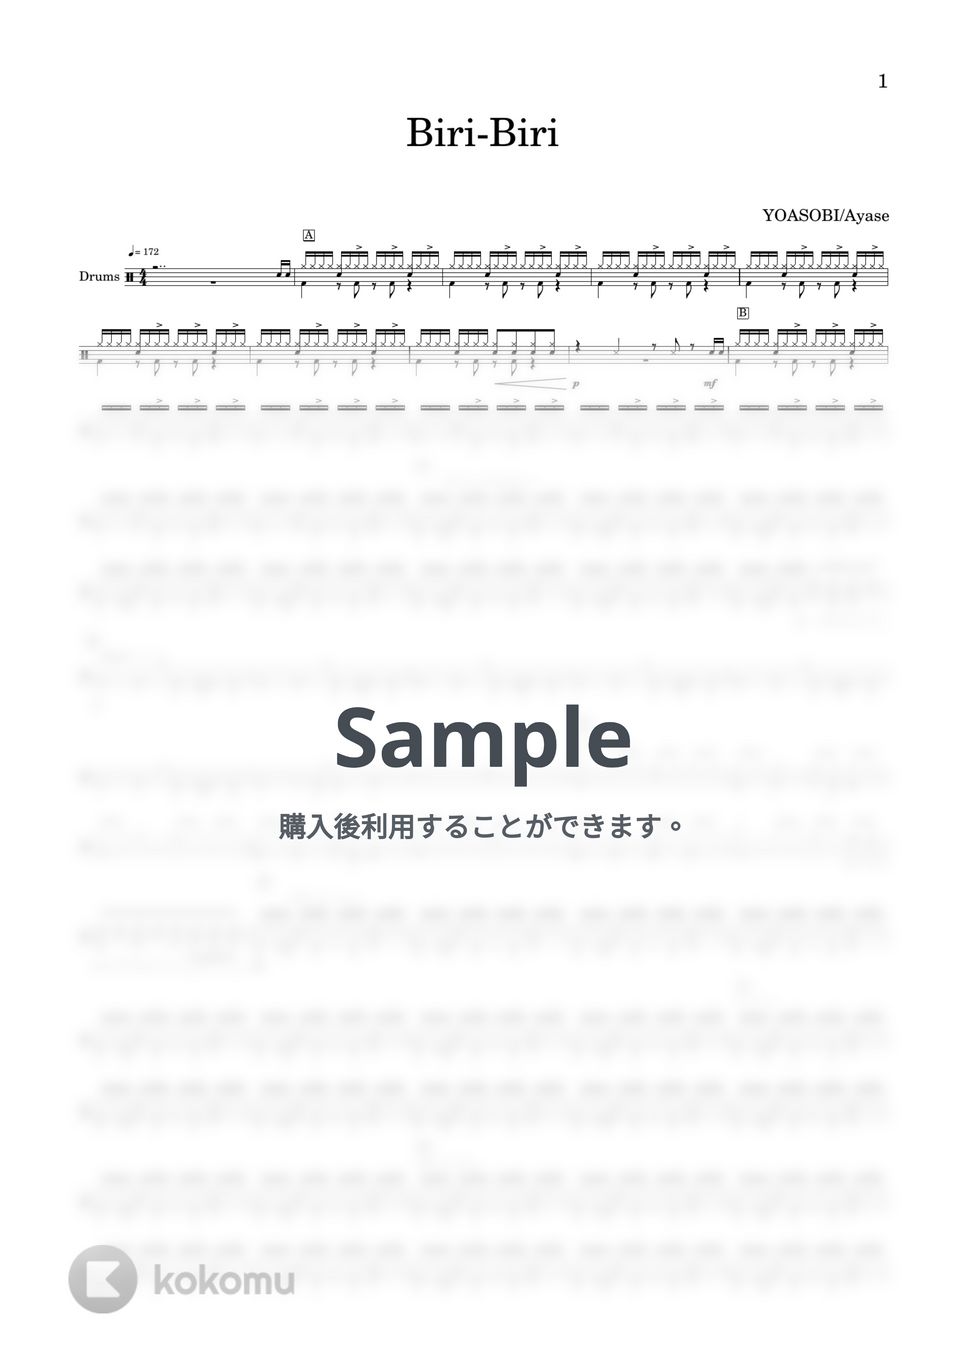 YOASOBI/Ayase - Biri-Biri (『ポケットモンスター スカーレット・バイオレット』インスパイアソング「Biri-Biri」ドラム譜) by Tsukaken